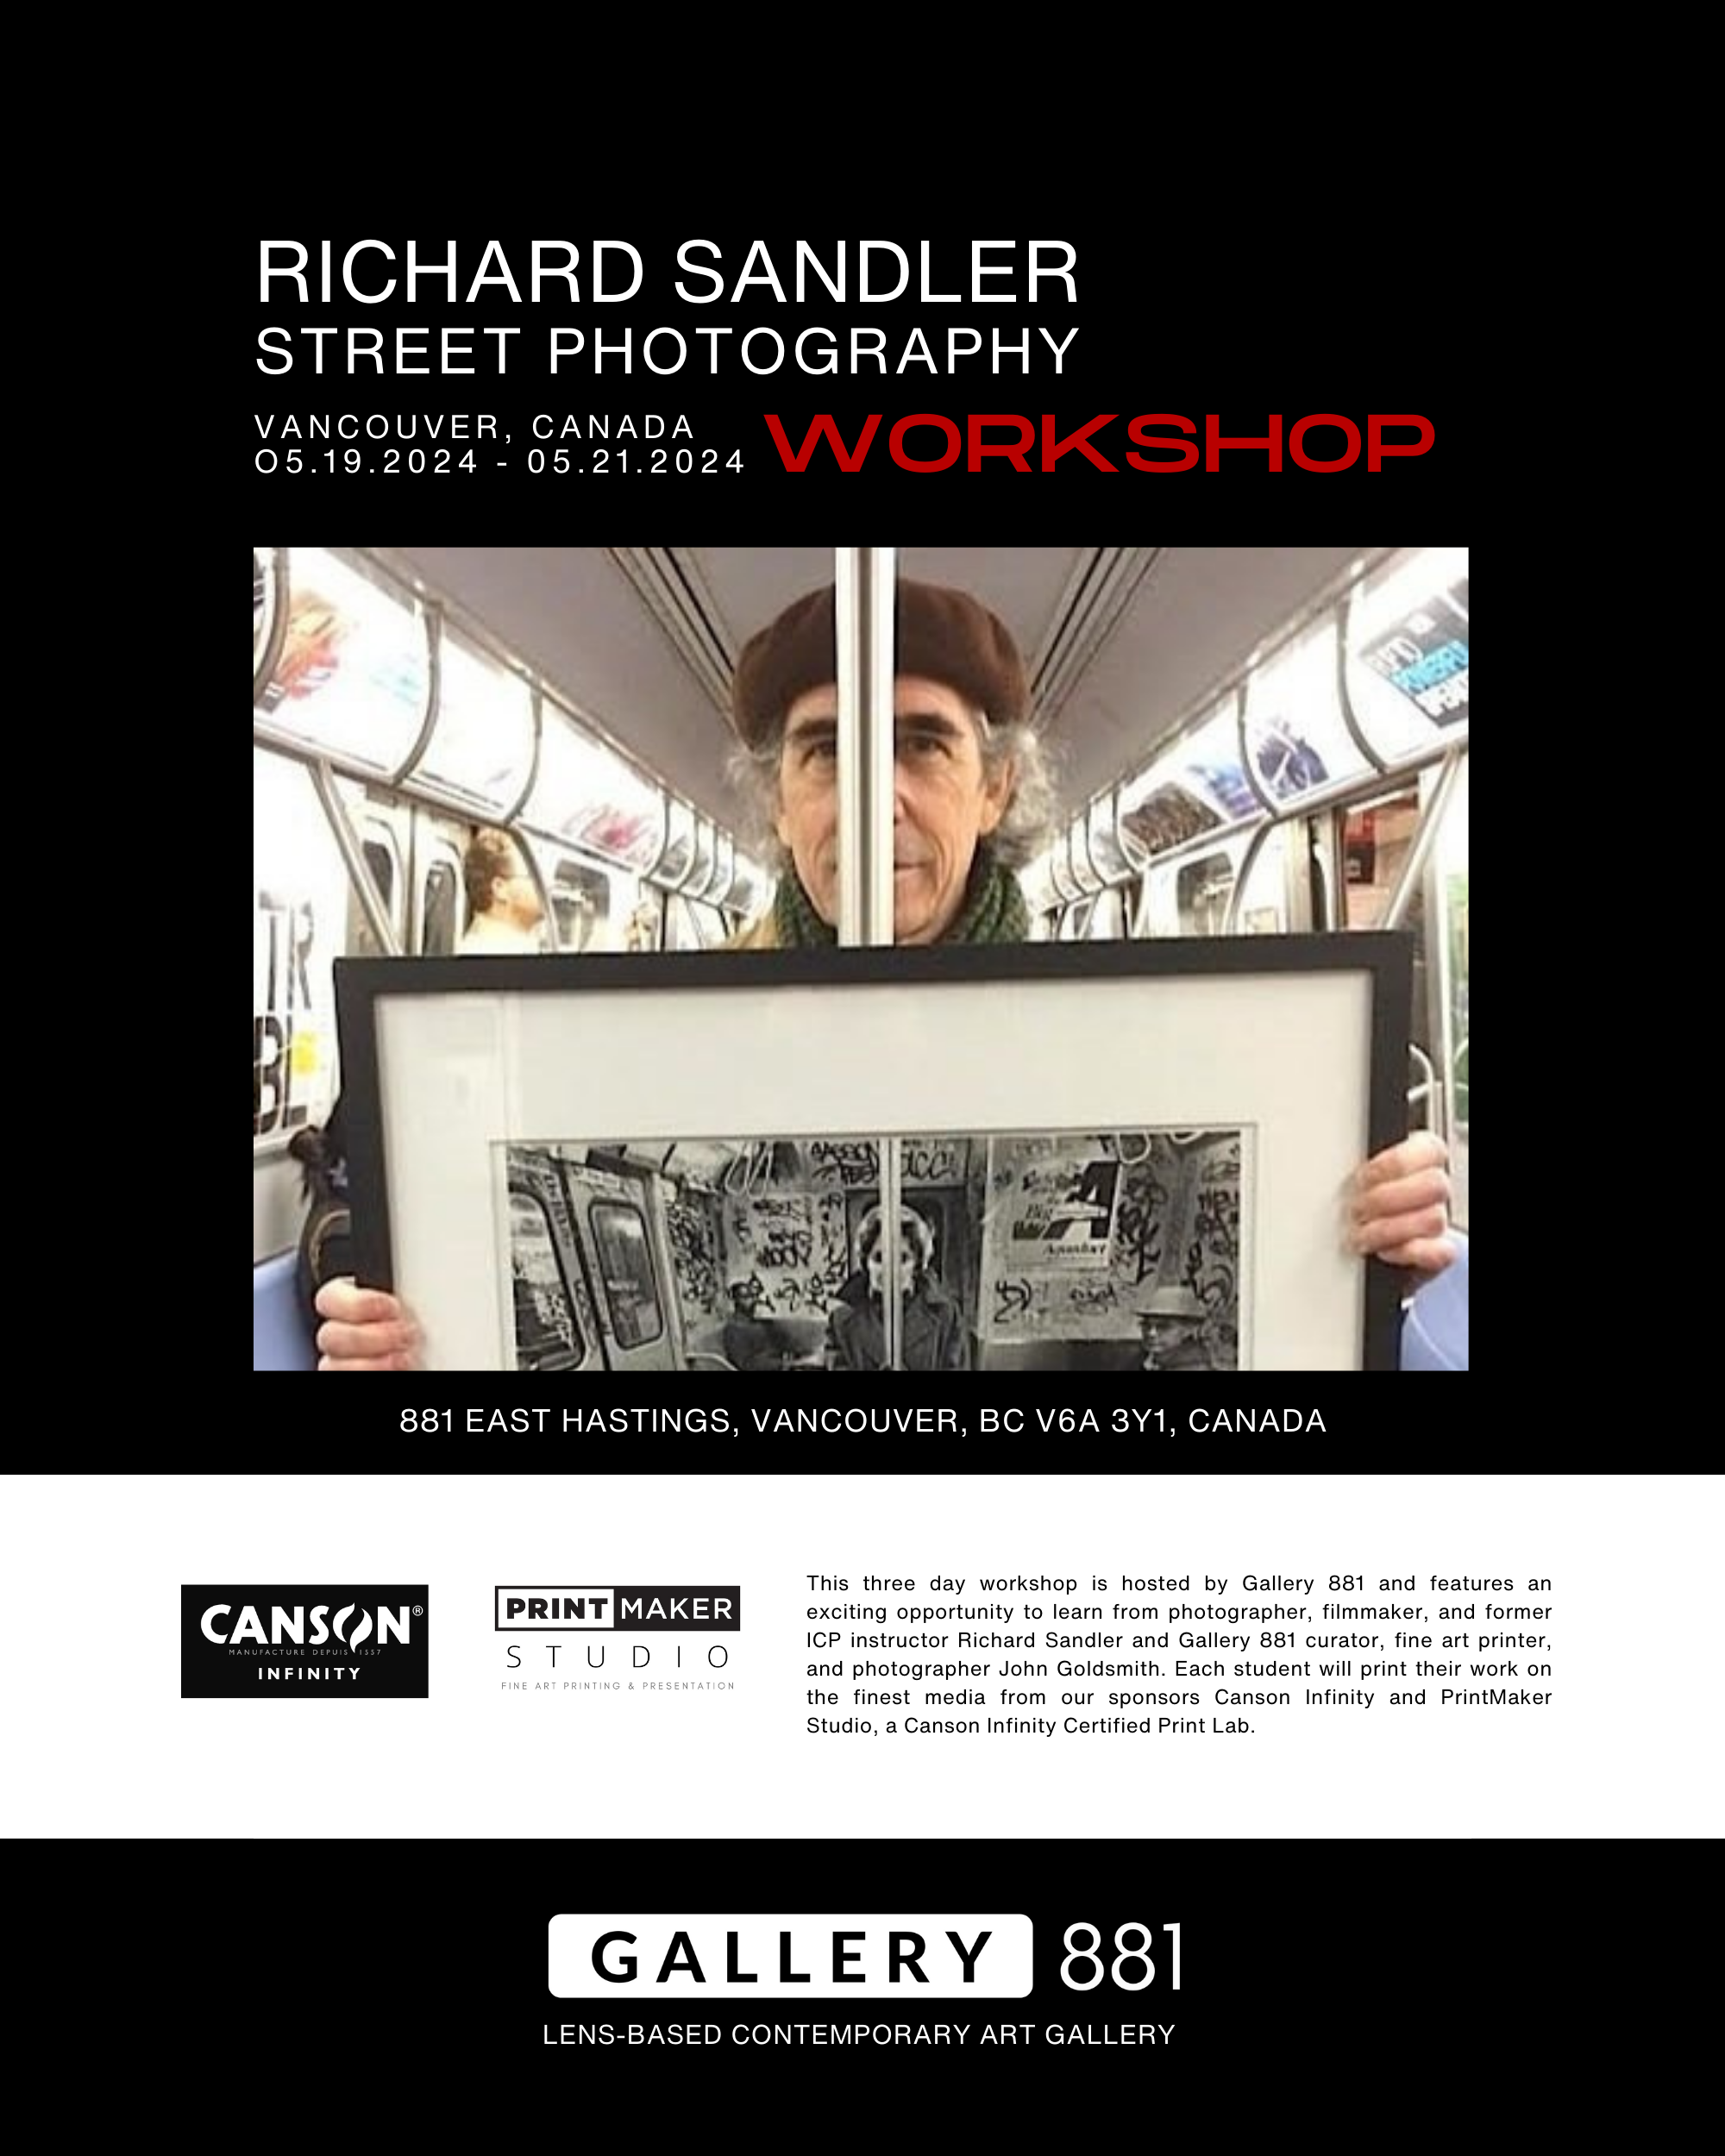 Gallery-881-Richard-Sandler-Workshop-9.png